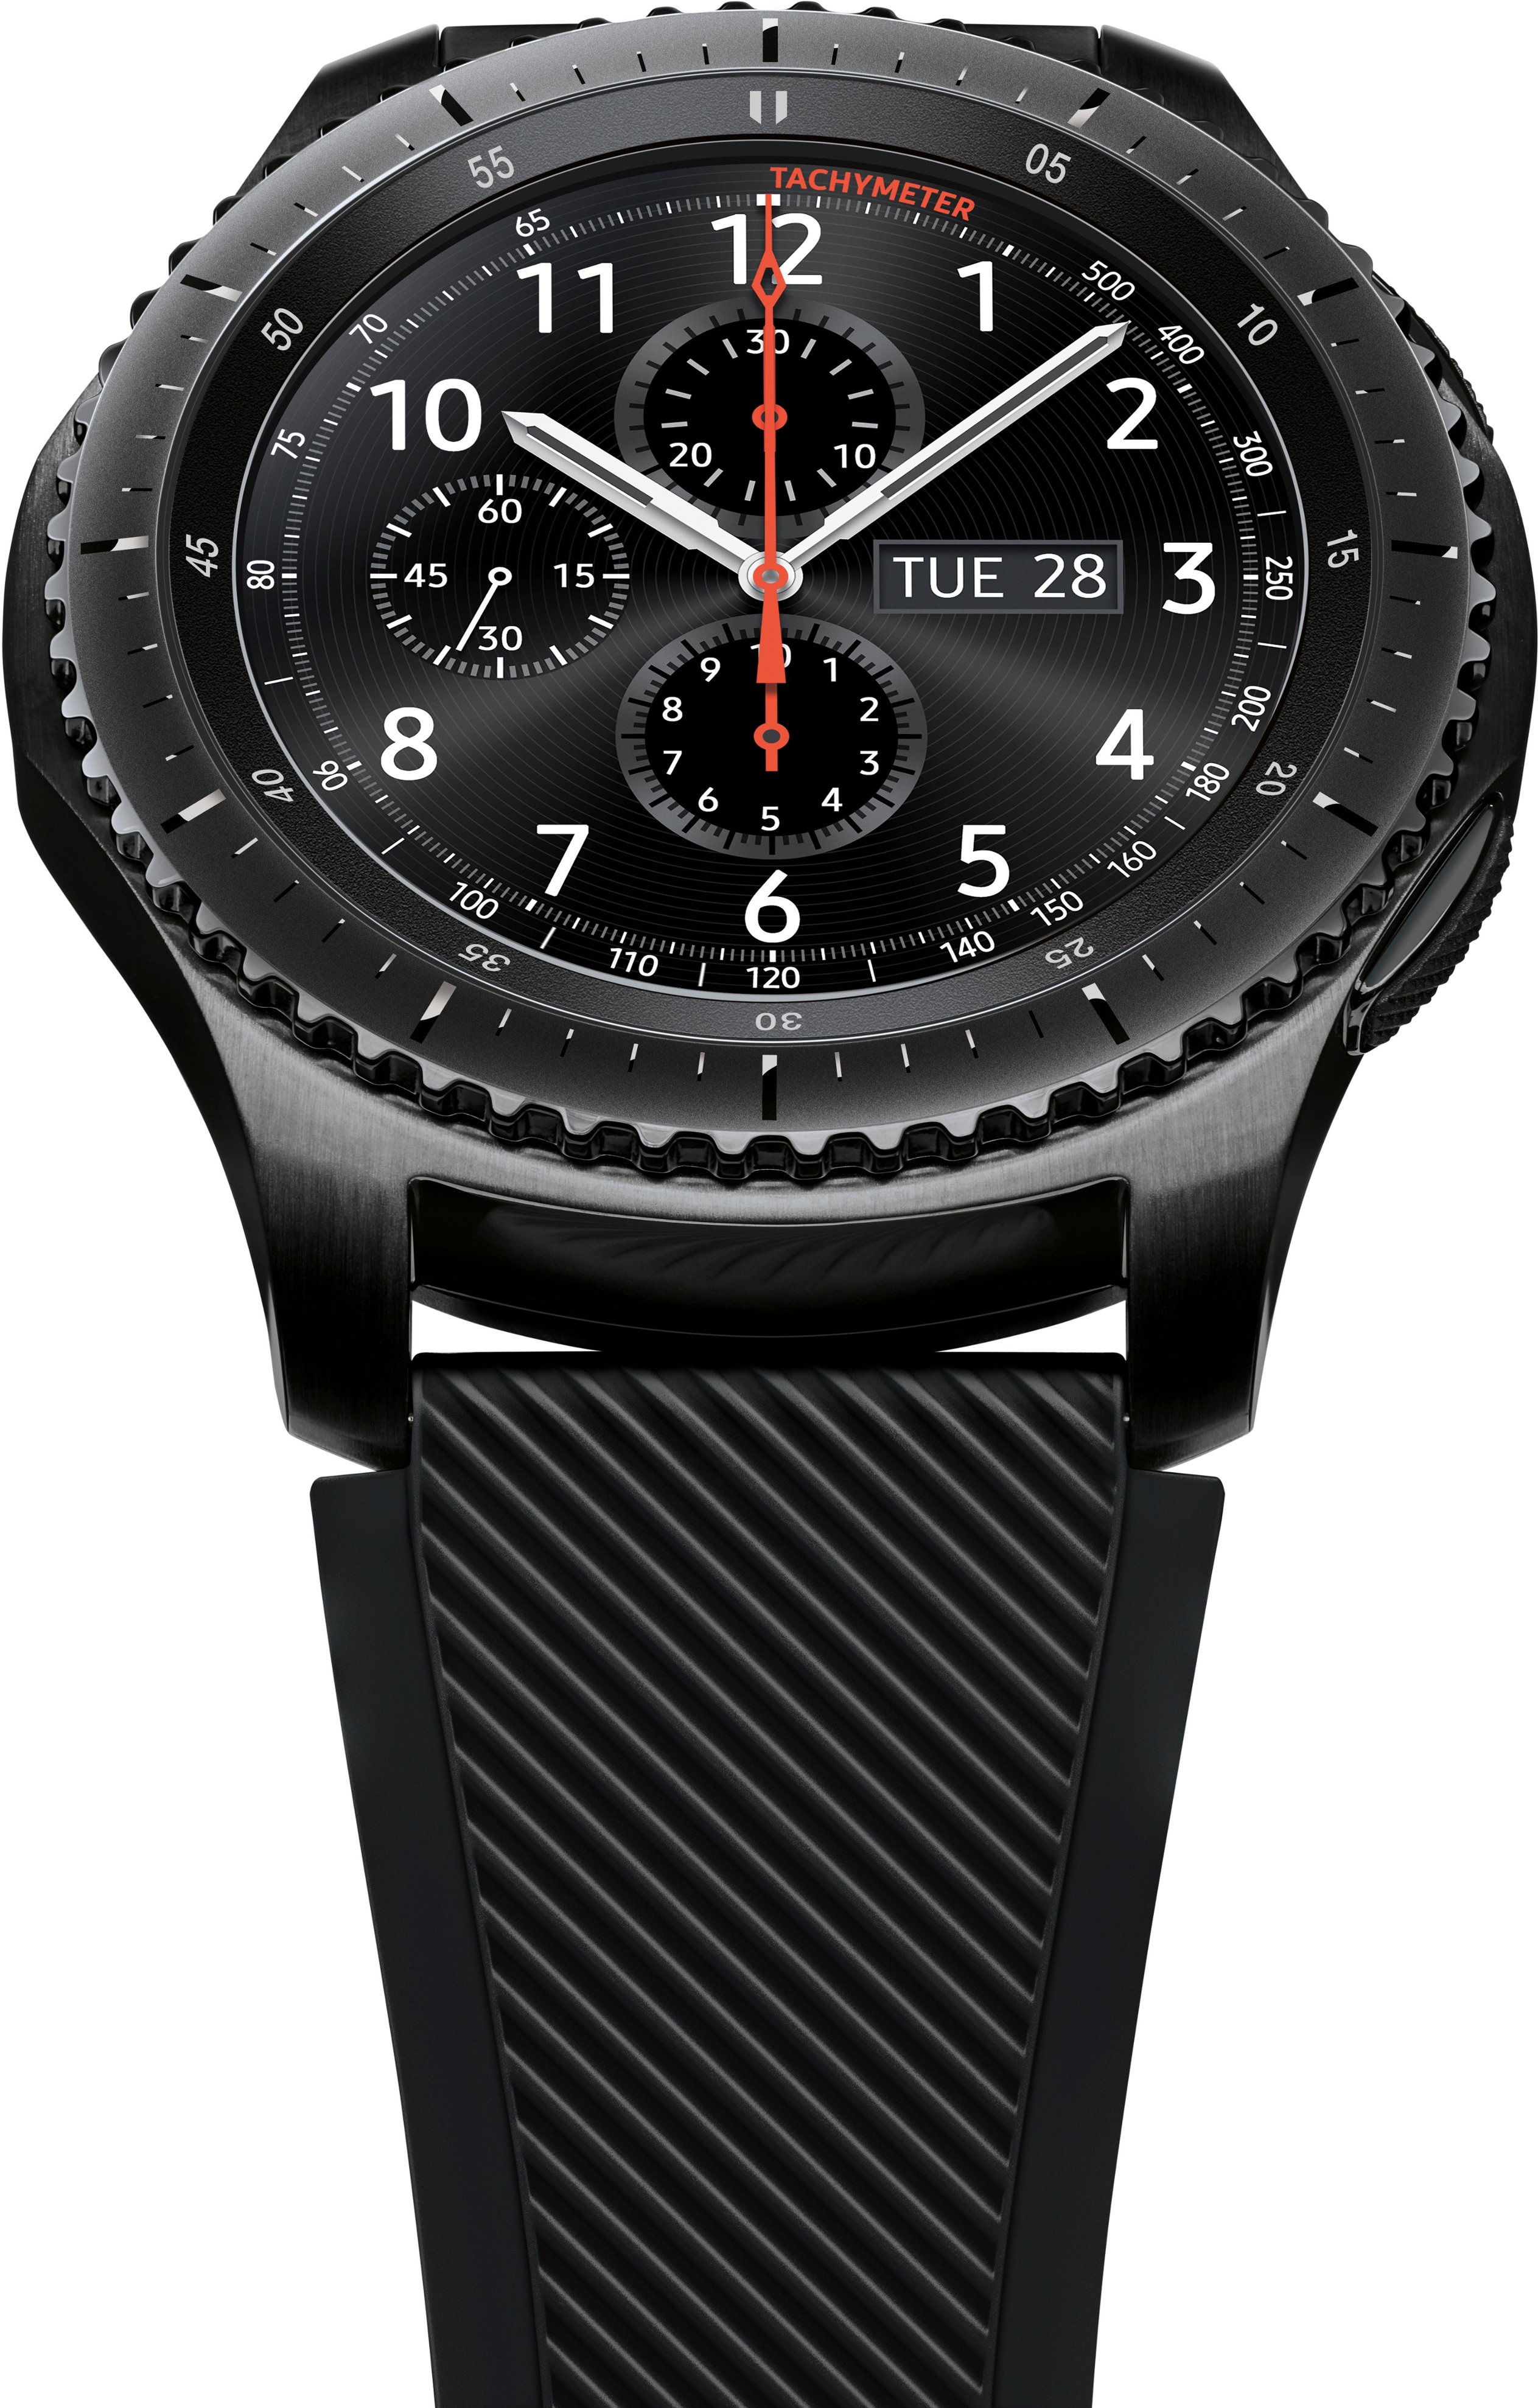 Samsung Gear S3 Frontier Smartwatch 46mm Stainless Steel Verizon Dark Gray Sm R765vdaavzw Best Buy